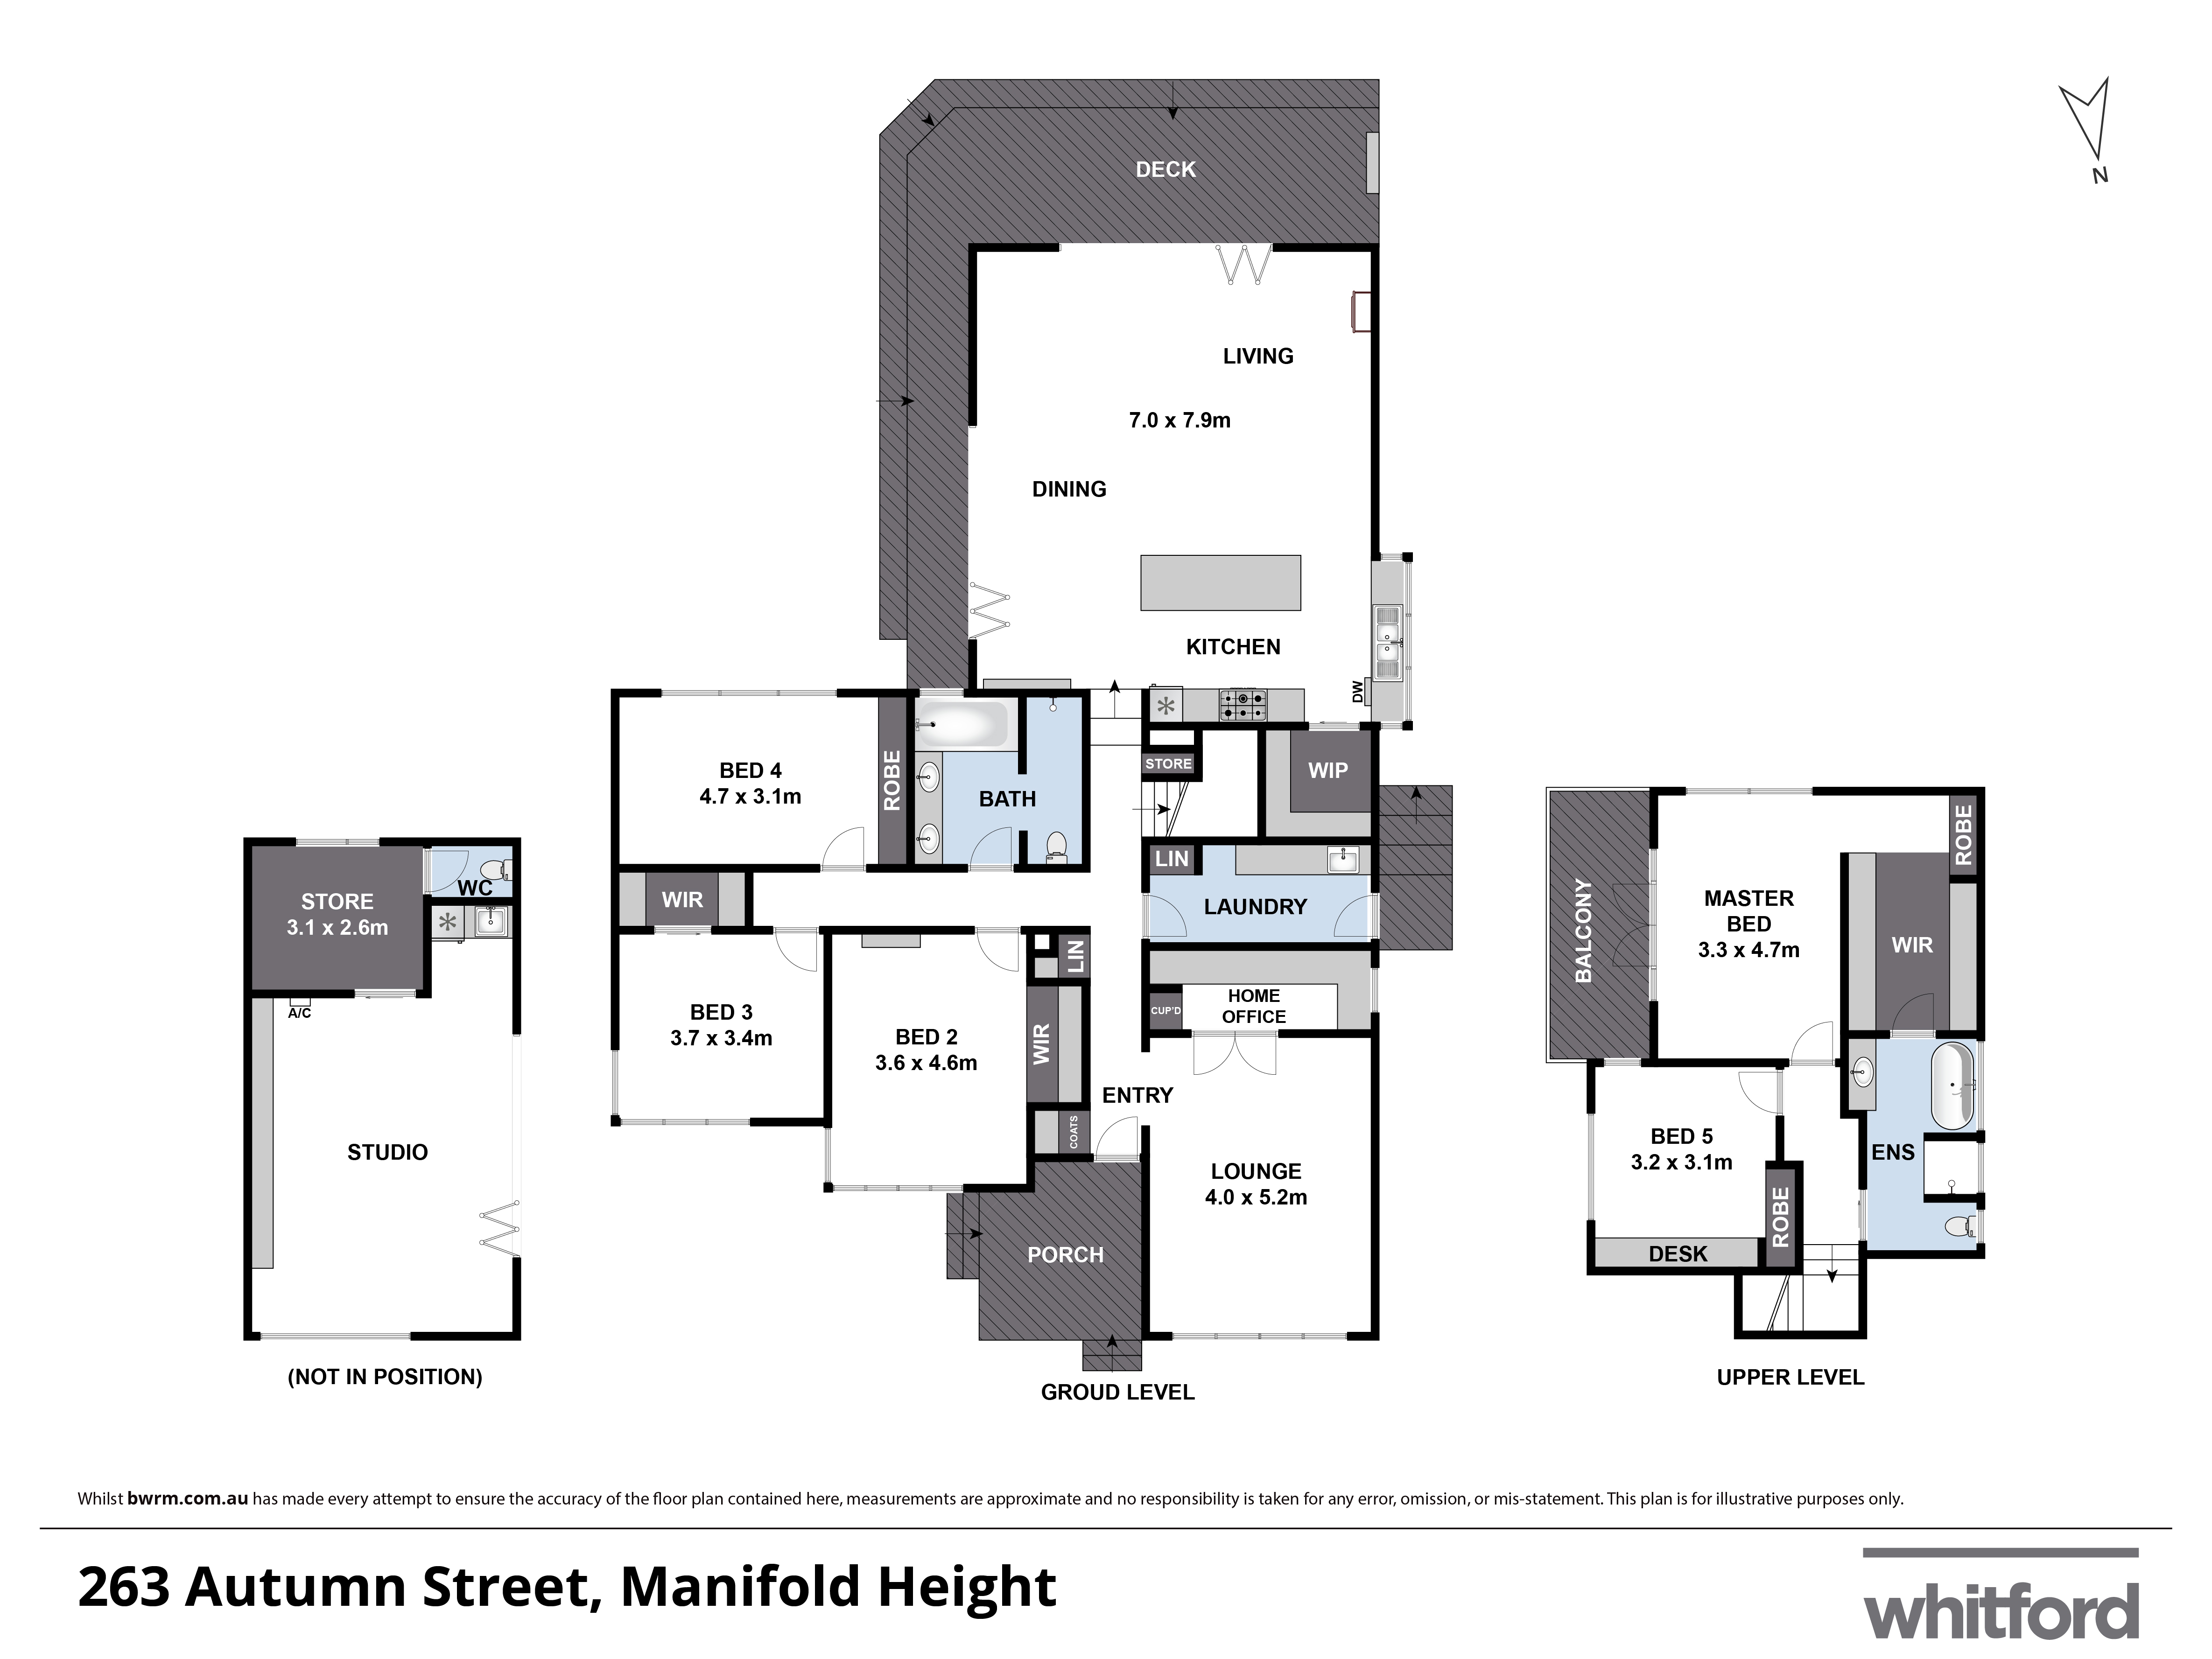 263 Autumn Street, Manifold Heights